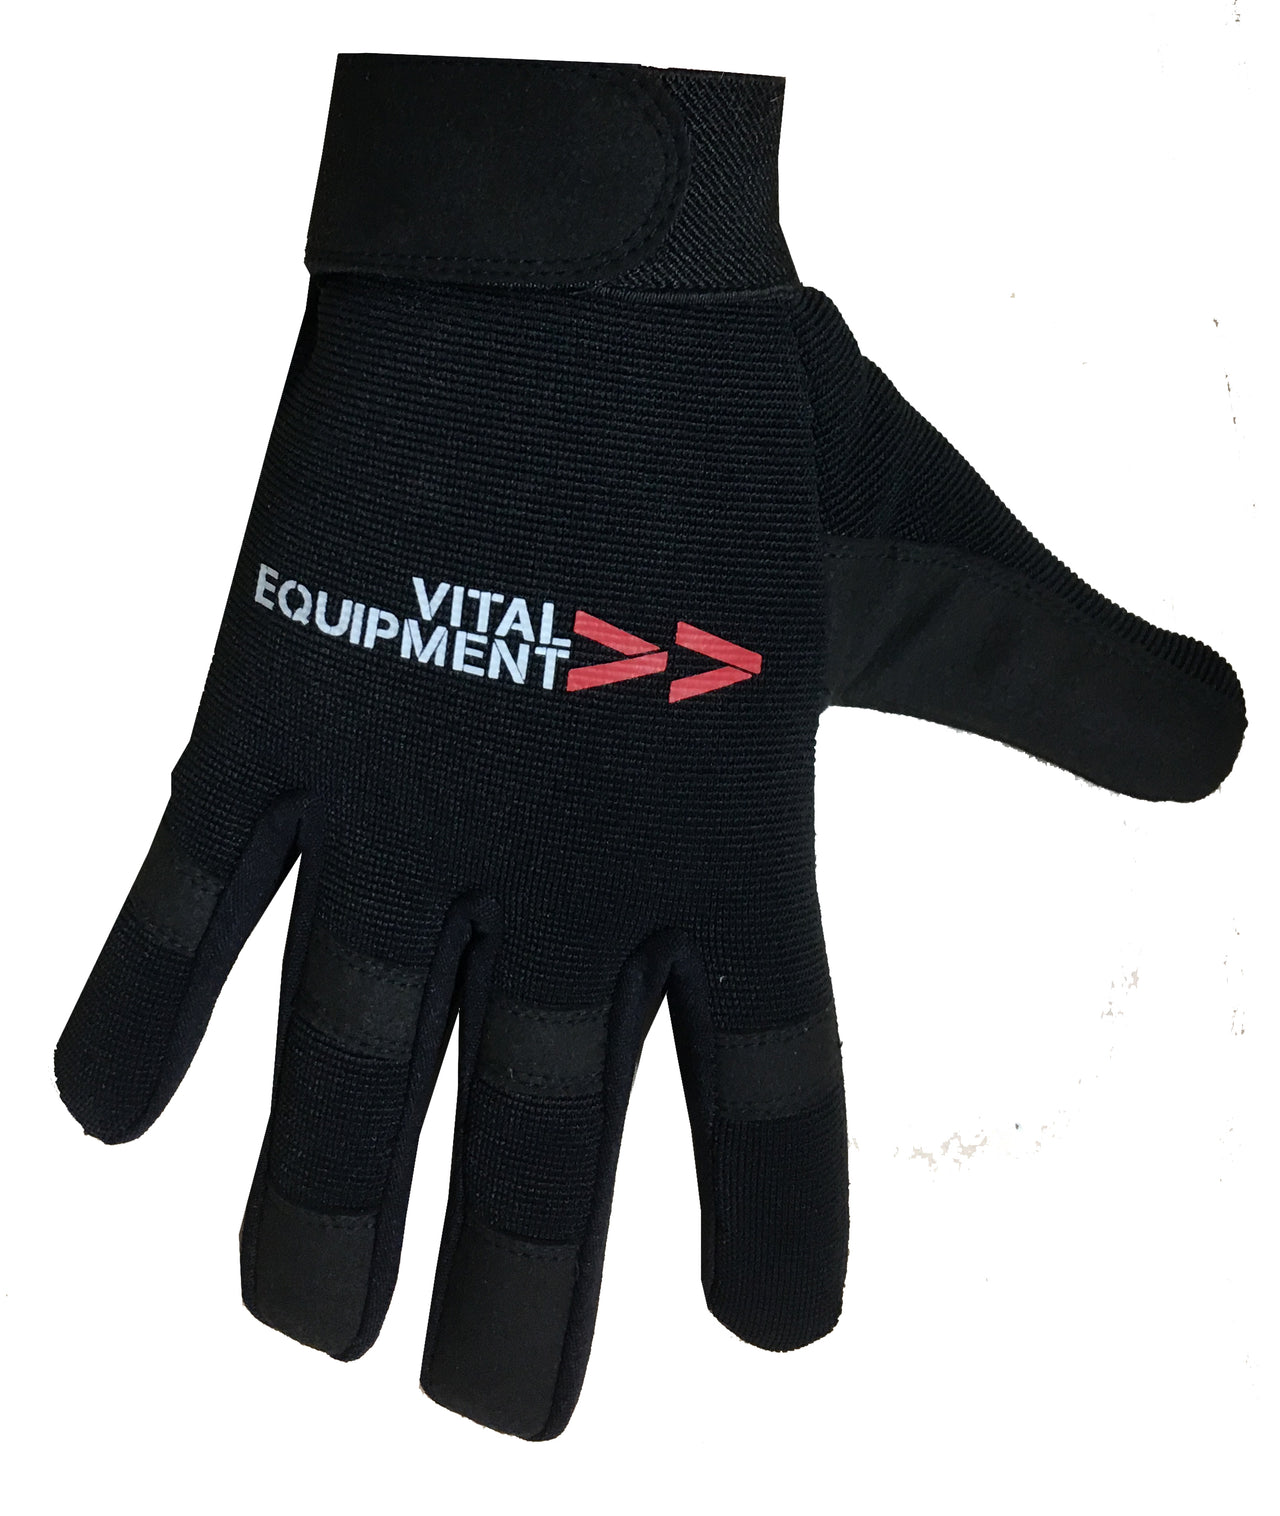 Vital Equipment Mechanic Gloves